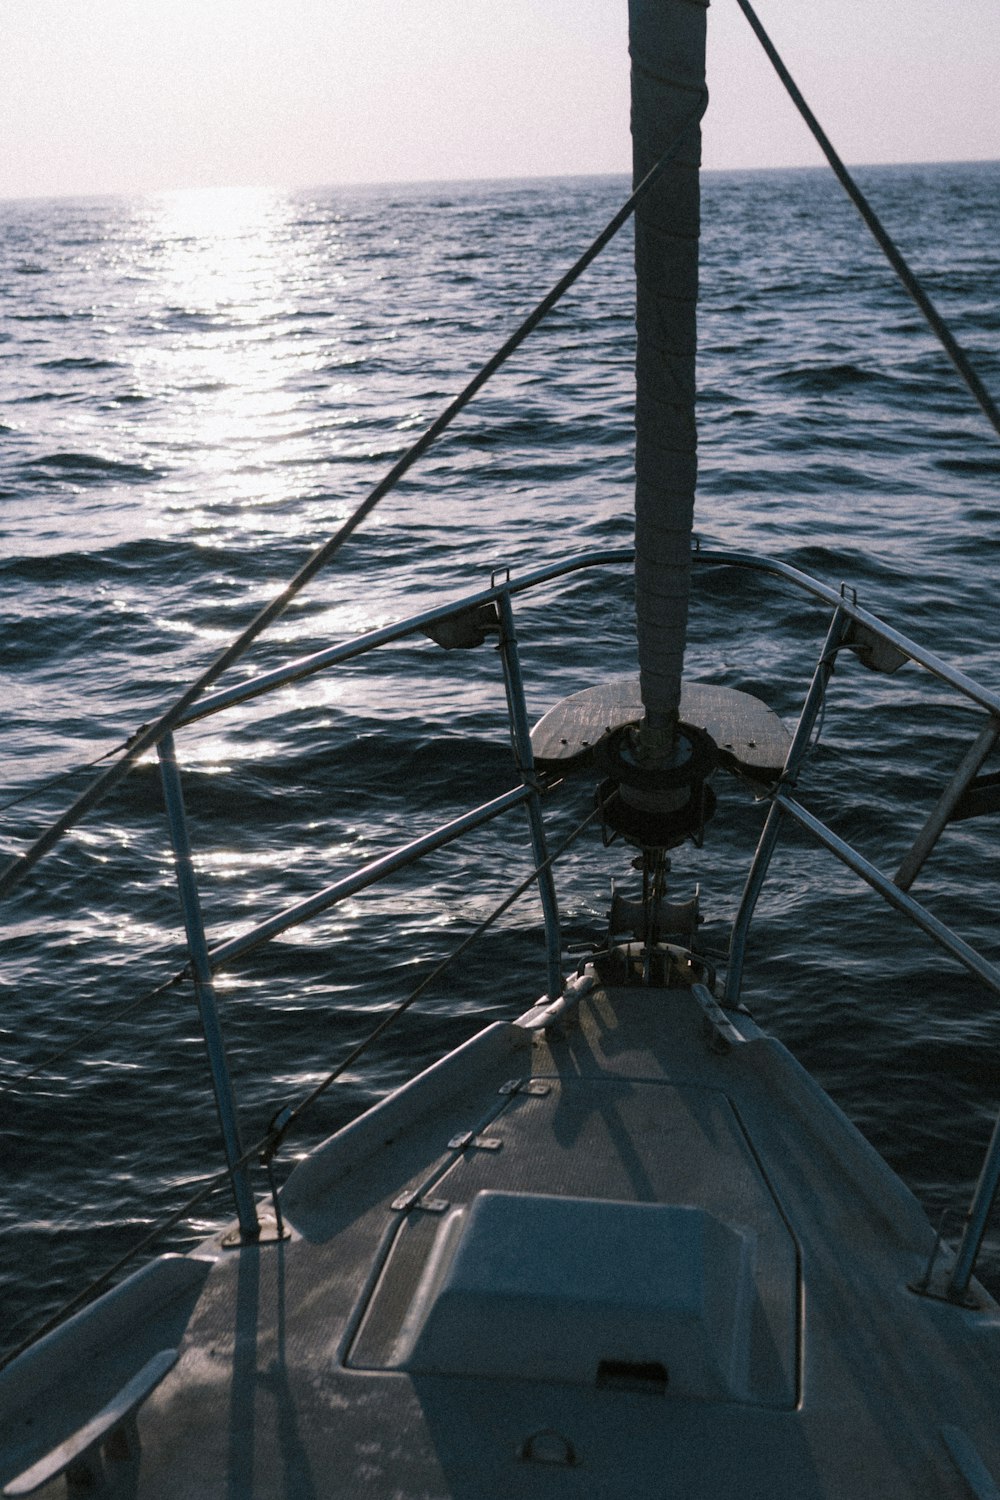 Canna da pesca in bianco e nero sul mare blu durante il giorno